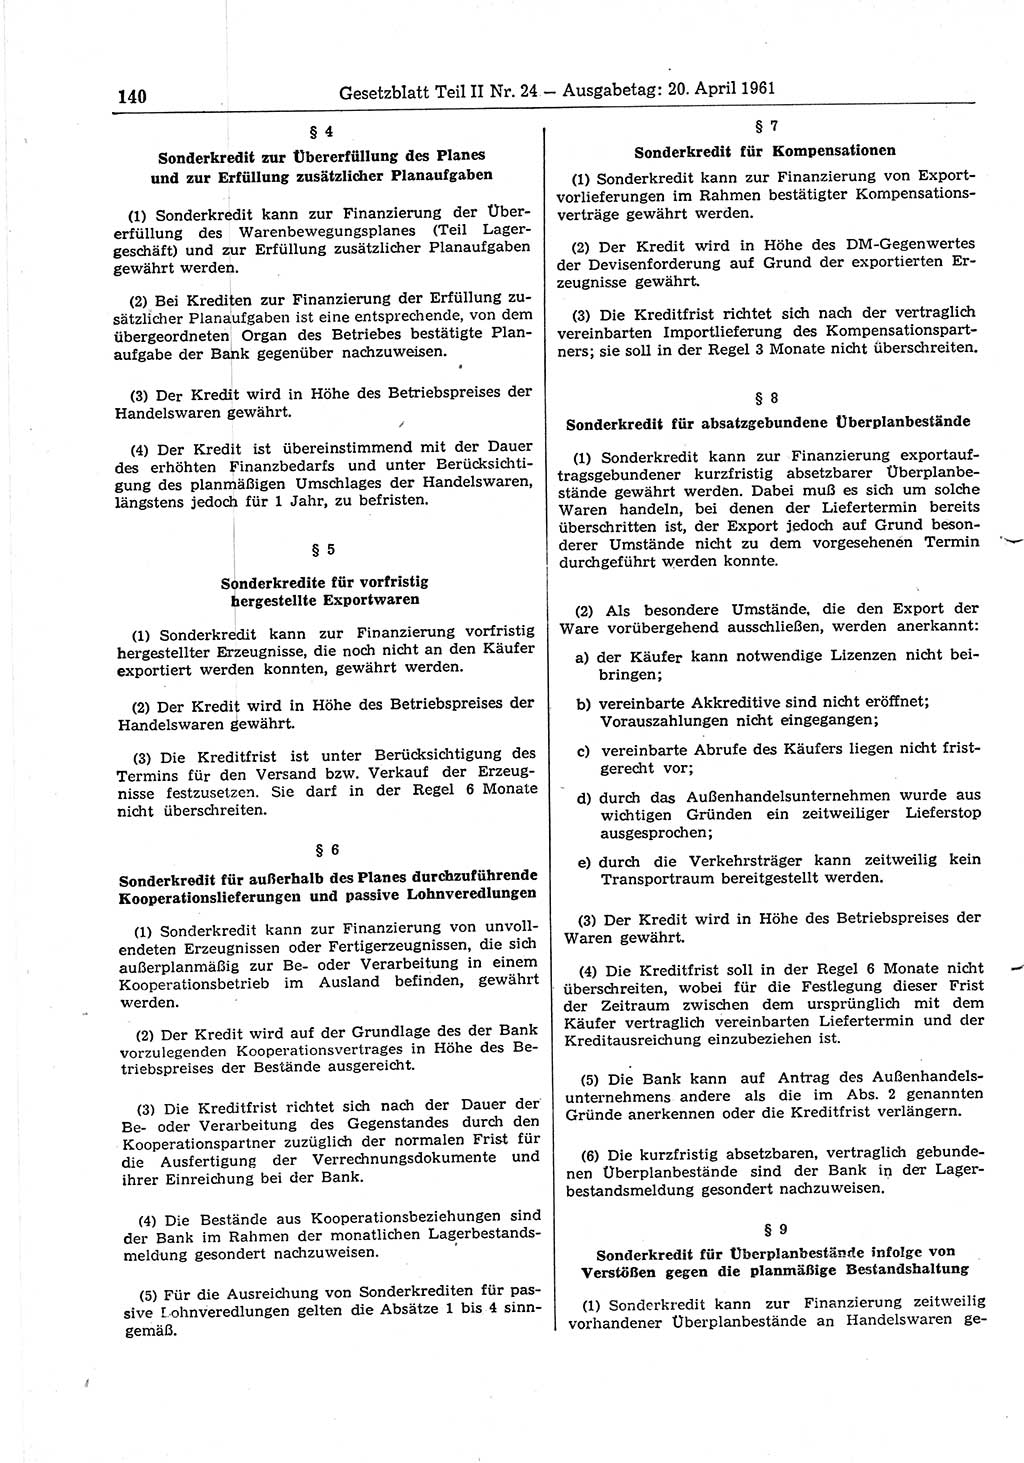 Gesetzblatt (GBl.) der Deutschen Demokratischen Republik (DDR) Teil ⅠⅠ 1961, Seite 140 (GBl. DDR ⅠⅠ 1961, S. 140)